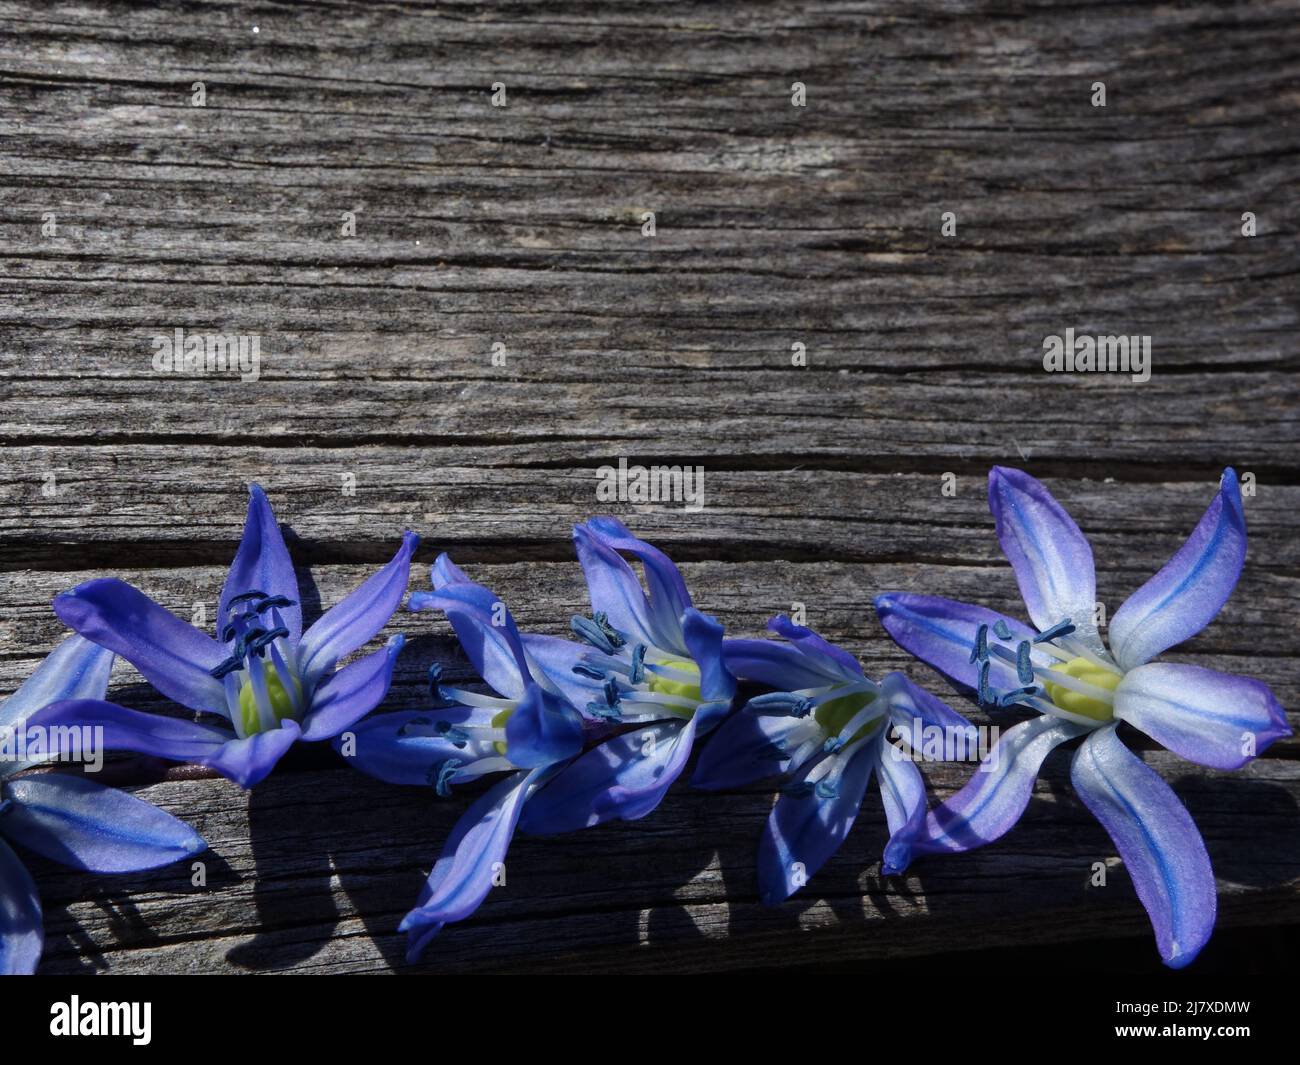 Die schöne blaue Frühlingsblume Scilla siberica legte sich in einer Reihe auf ein Holzbrett. Ideal für die Verwendung als Karten, Einladungen oder das Einfügen eines Bildes. Stockfoto